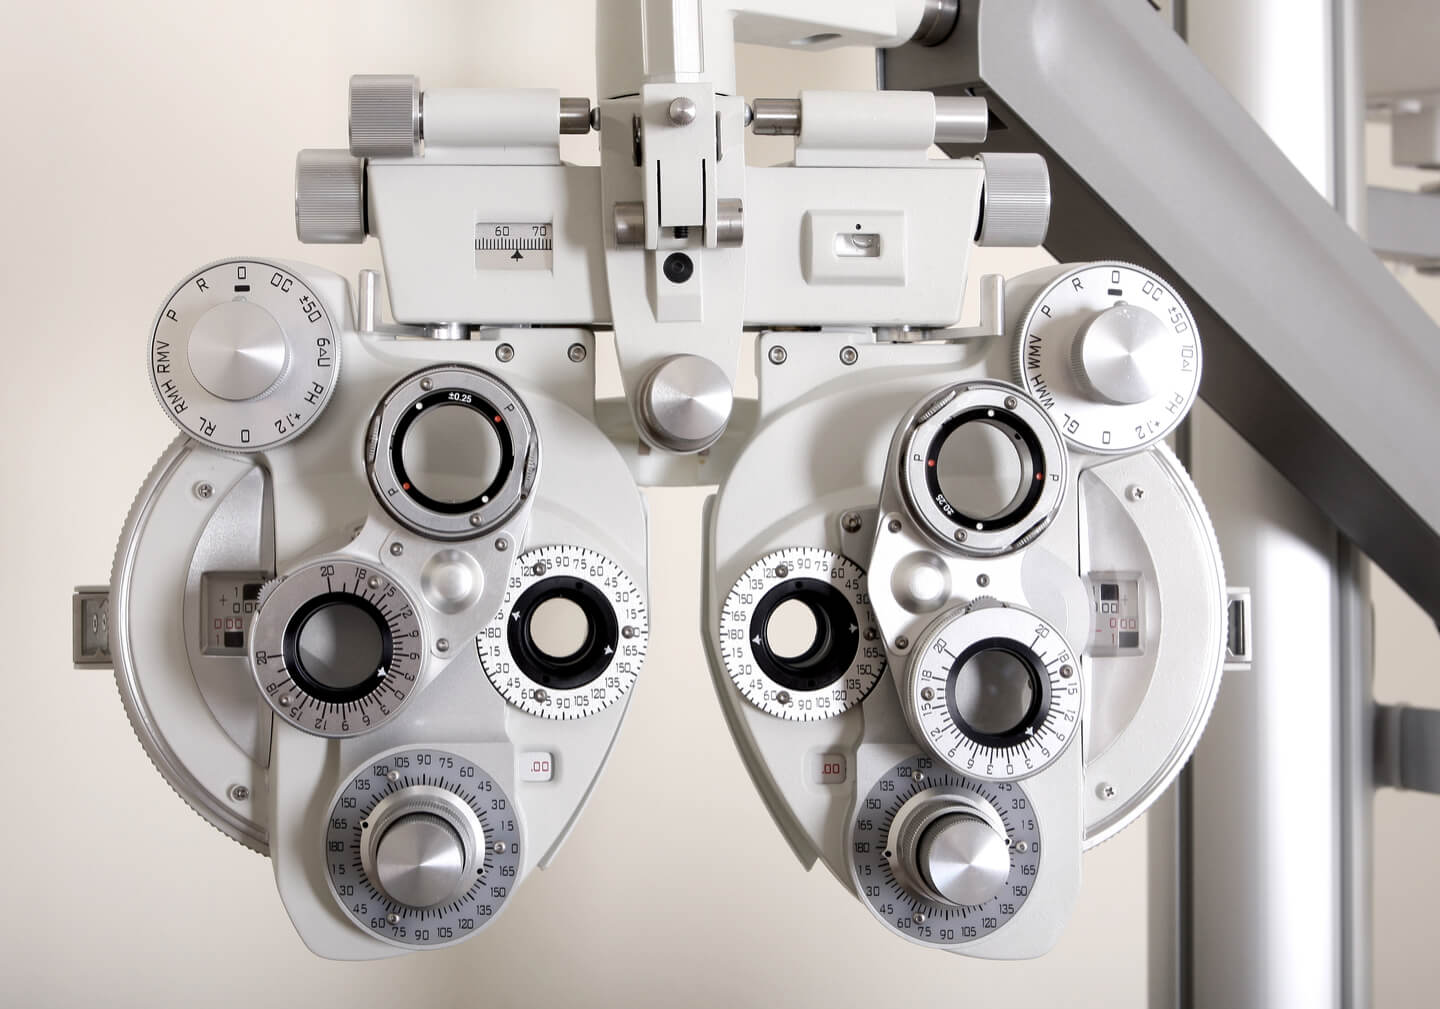 Controllo optometrico - Ottica Lente Amica